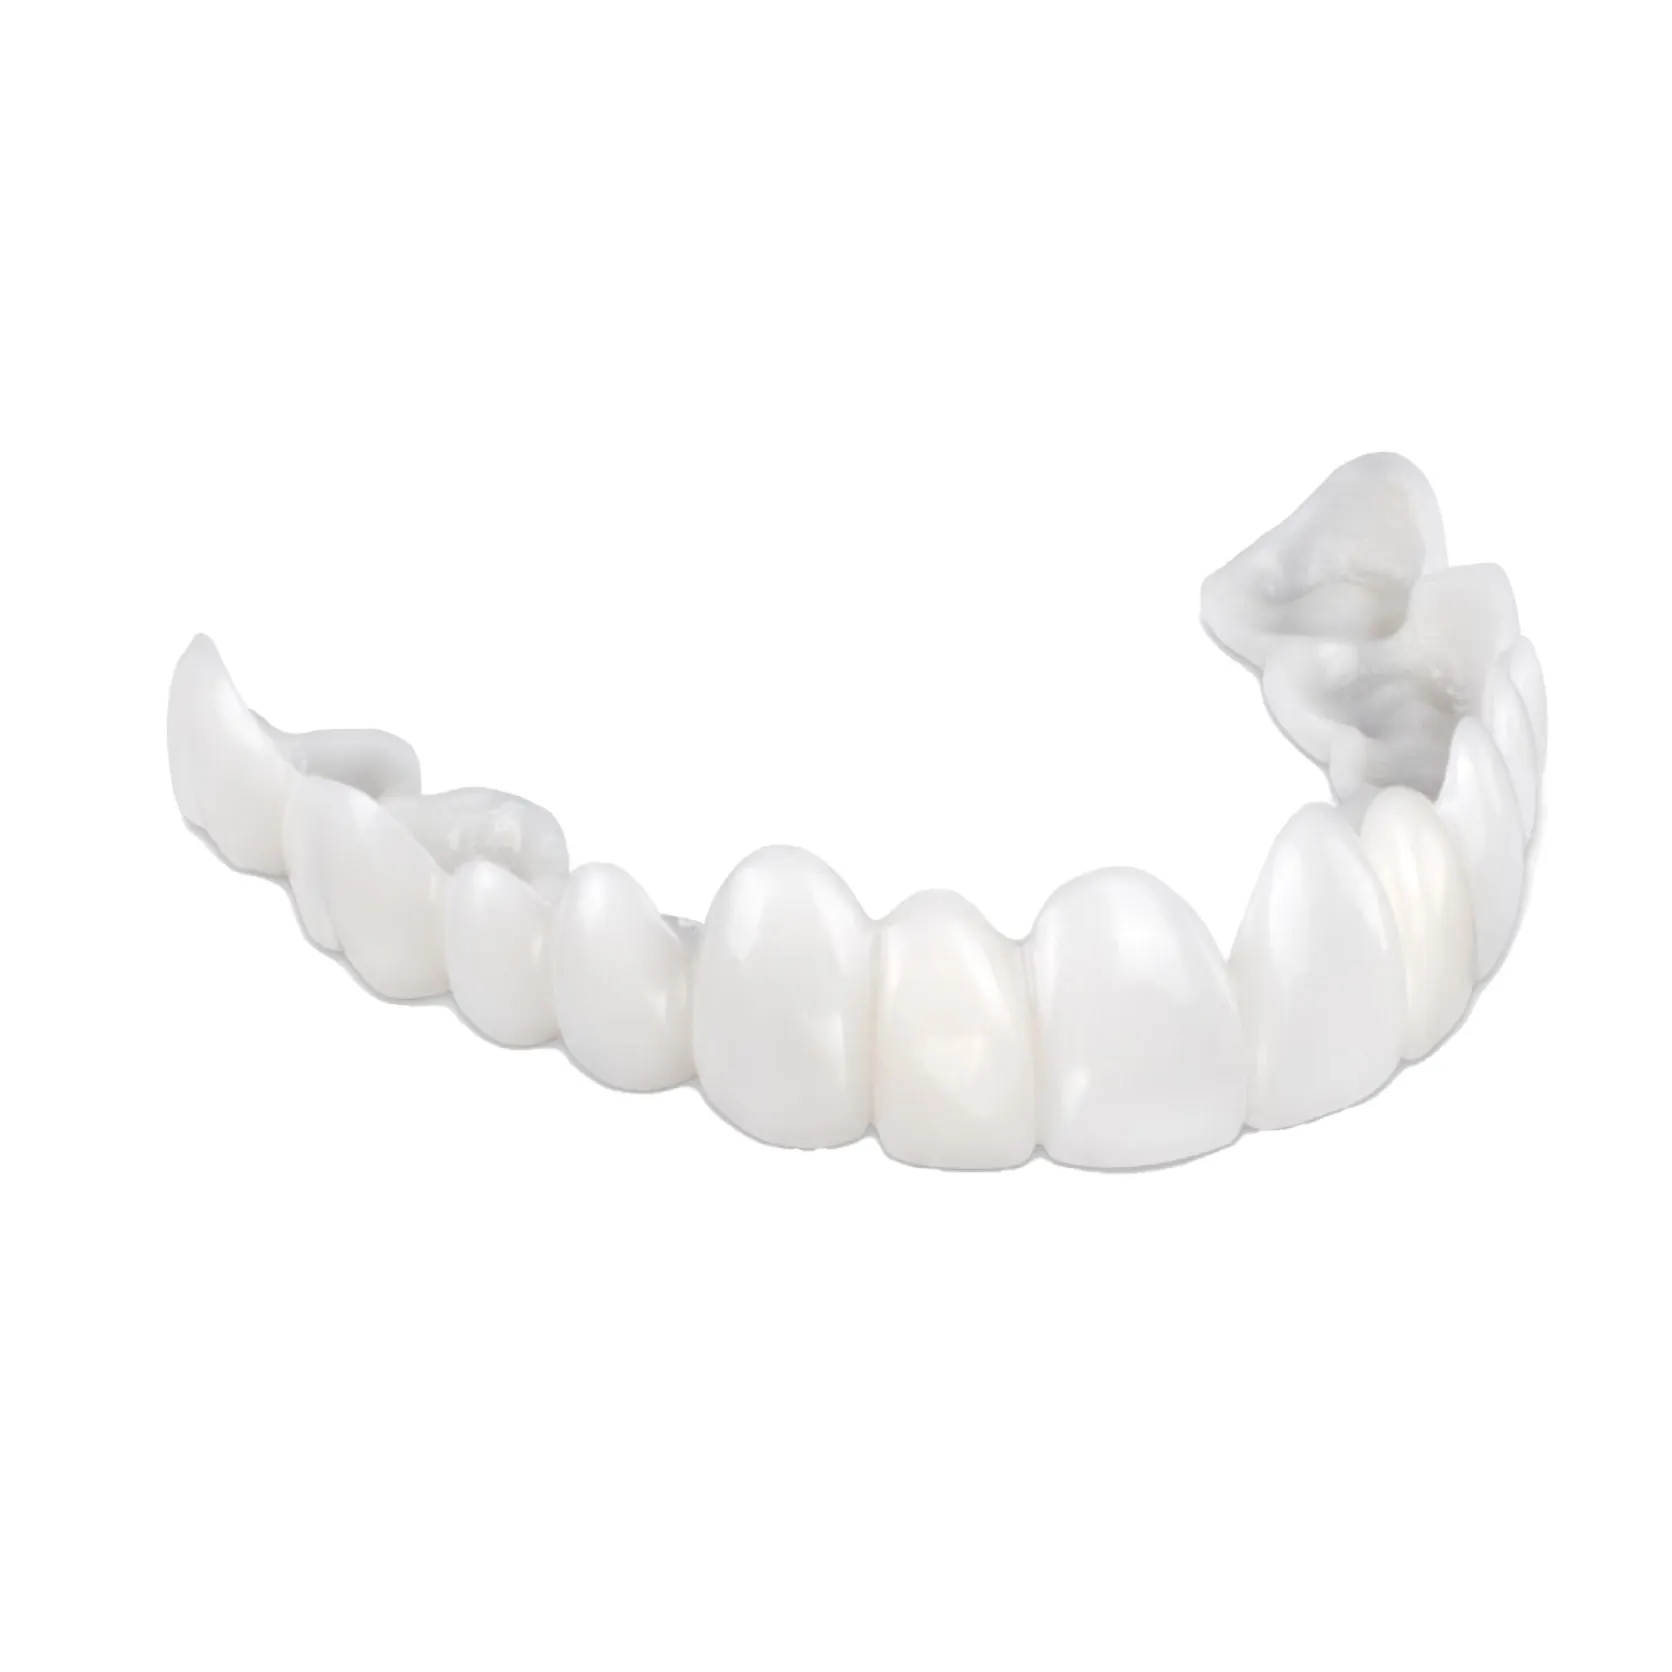 Стоматология мгновенная идеальная улыбка удобная посадка гибкие Искусственные зубы подходят для большинства накладных зубов виниры с крышкой верхних зубов